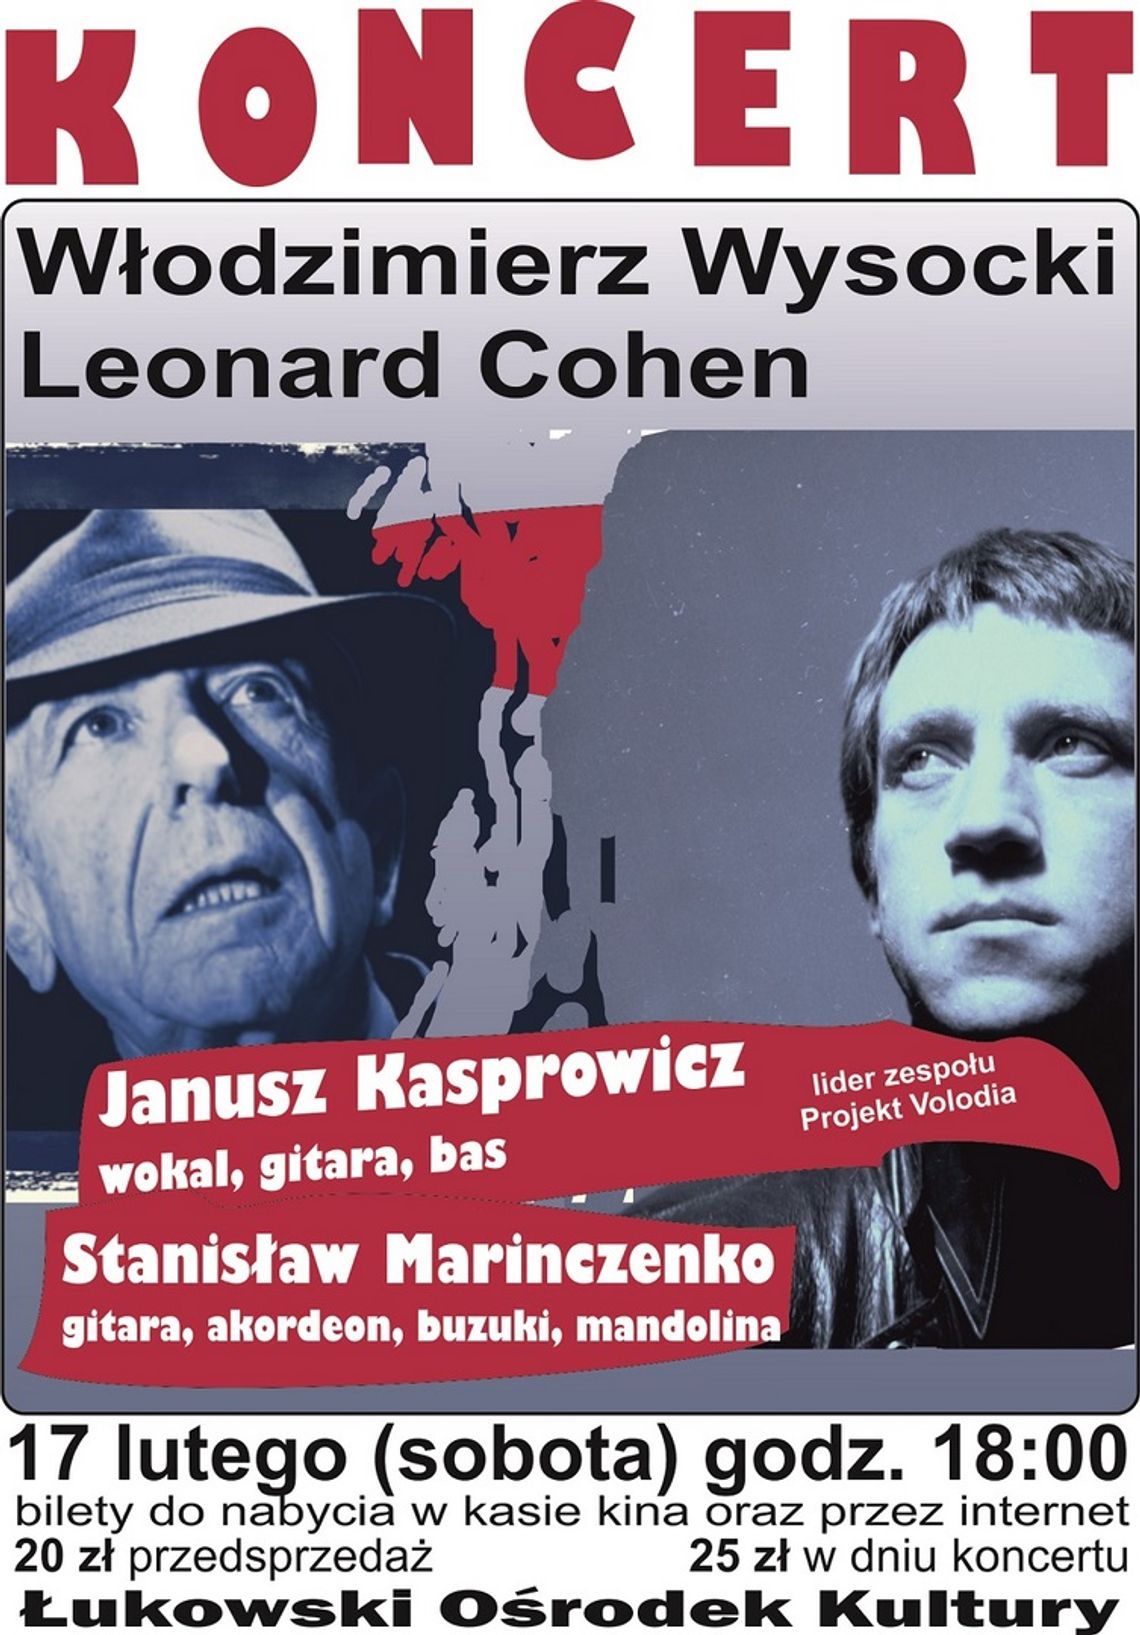 Wyjątkowy koncert piosenek Leonarda Cohena i Włodzimierza Wysockiego